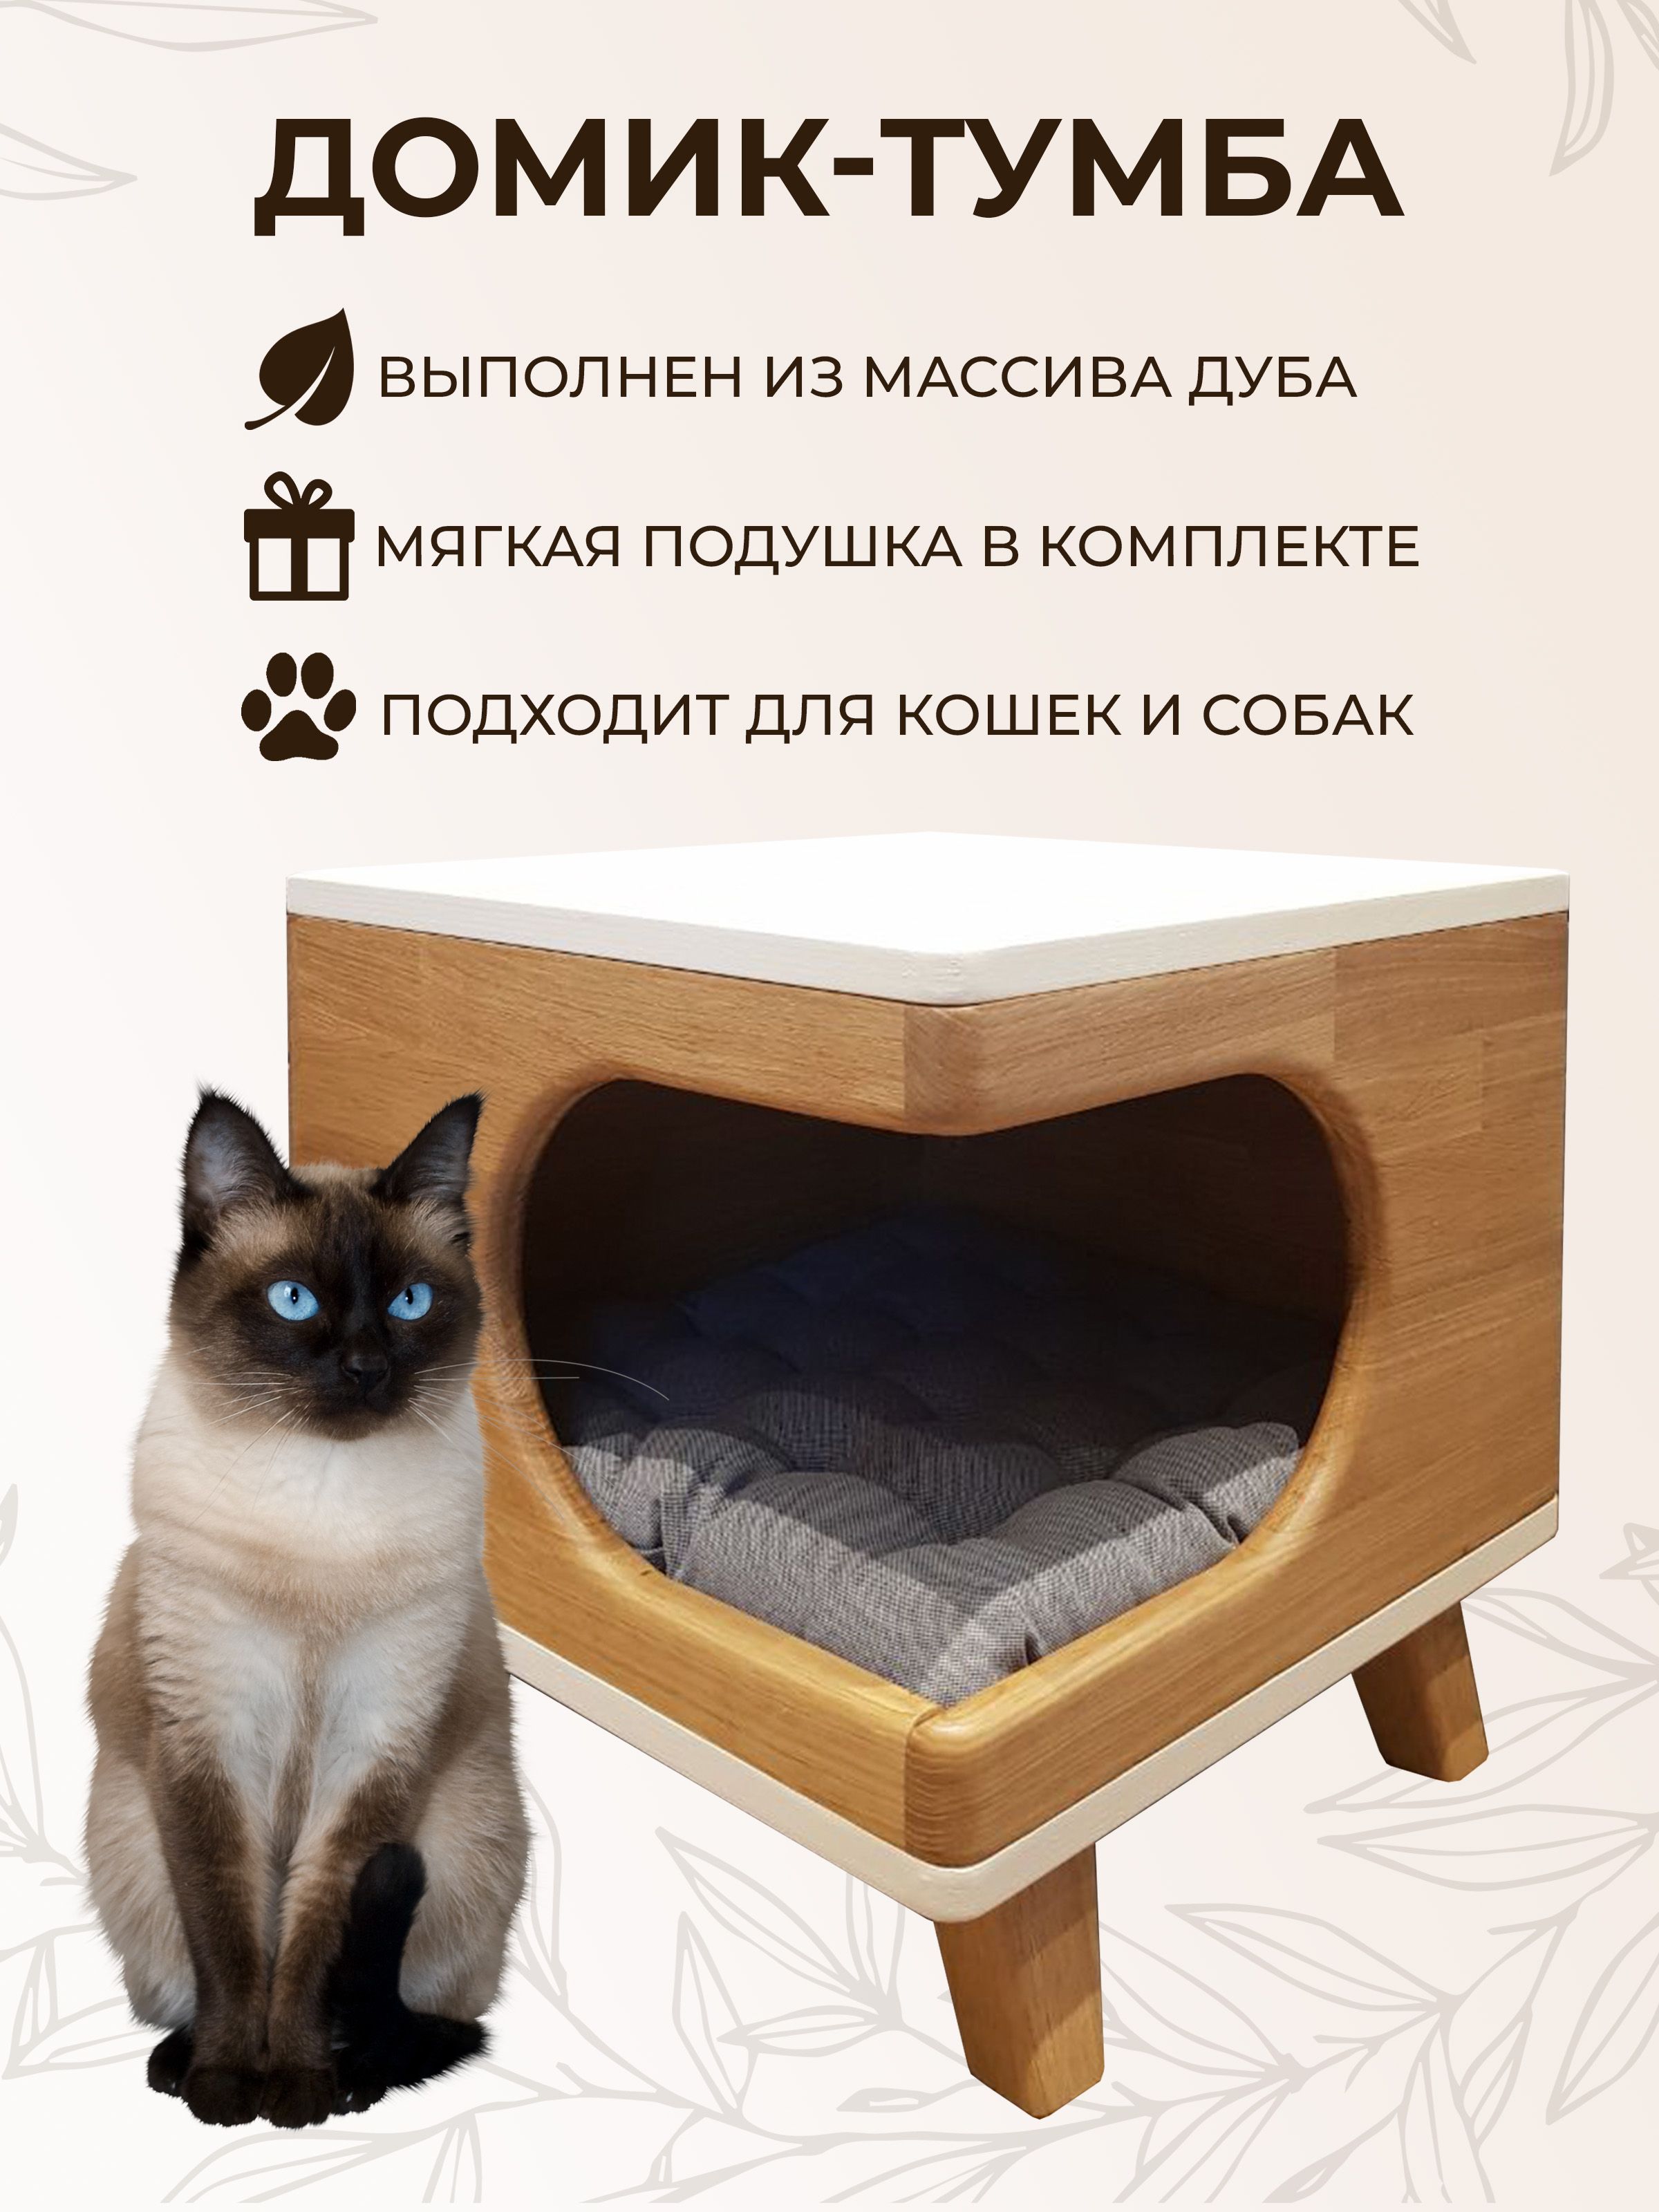 Домик для кошки: делаем правильный выбор